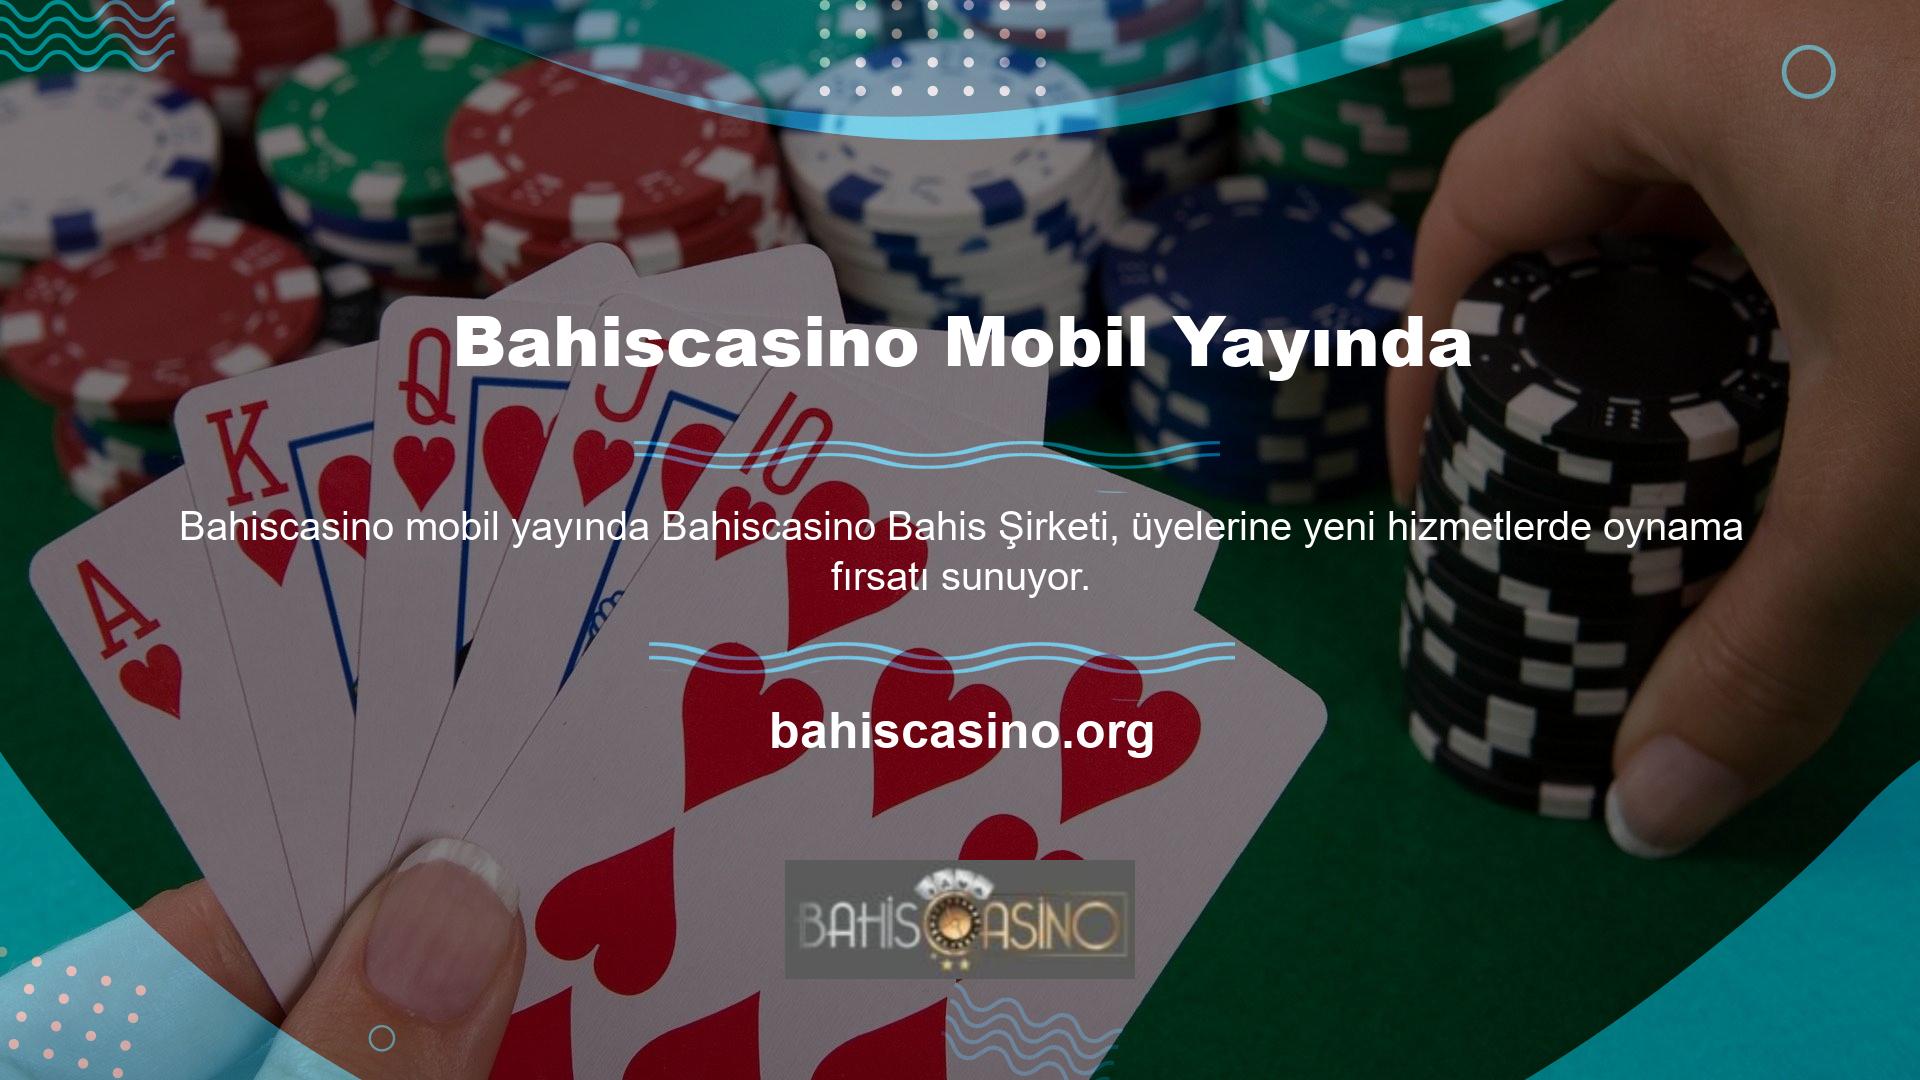 Bu yeni hizmetlerden biri olan Bahiscasino Mobil, cep telefonunuzdan çevrimiçi bahis oynamayı kolaylaştırıyor